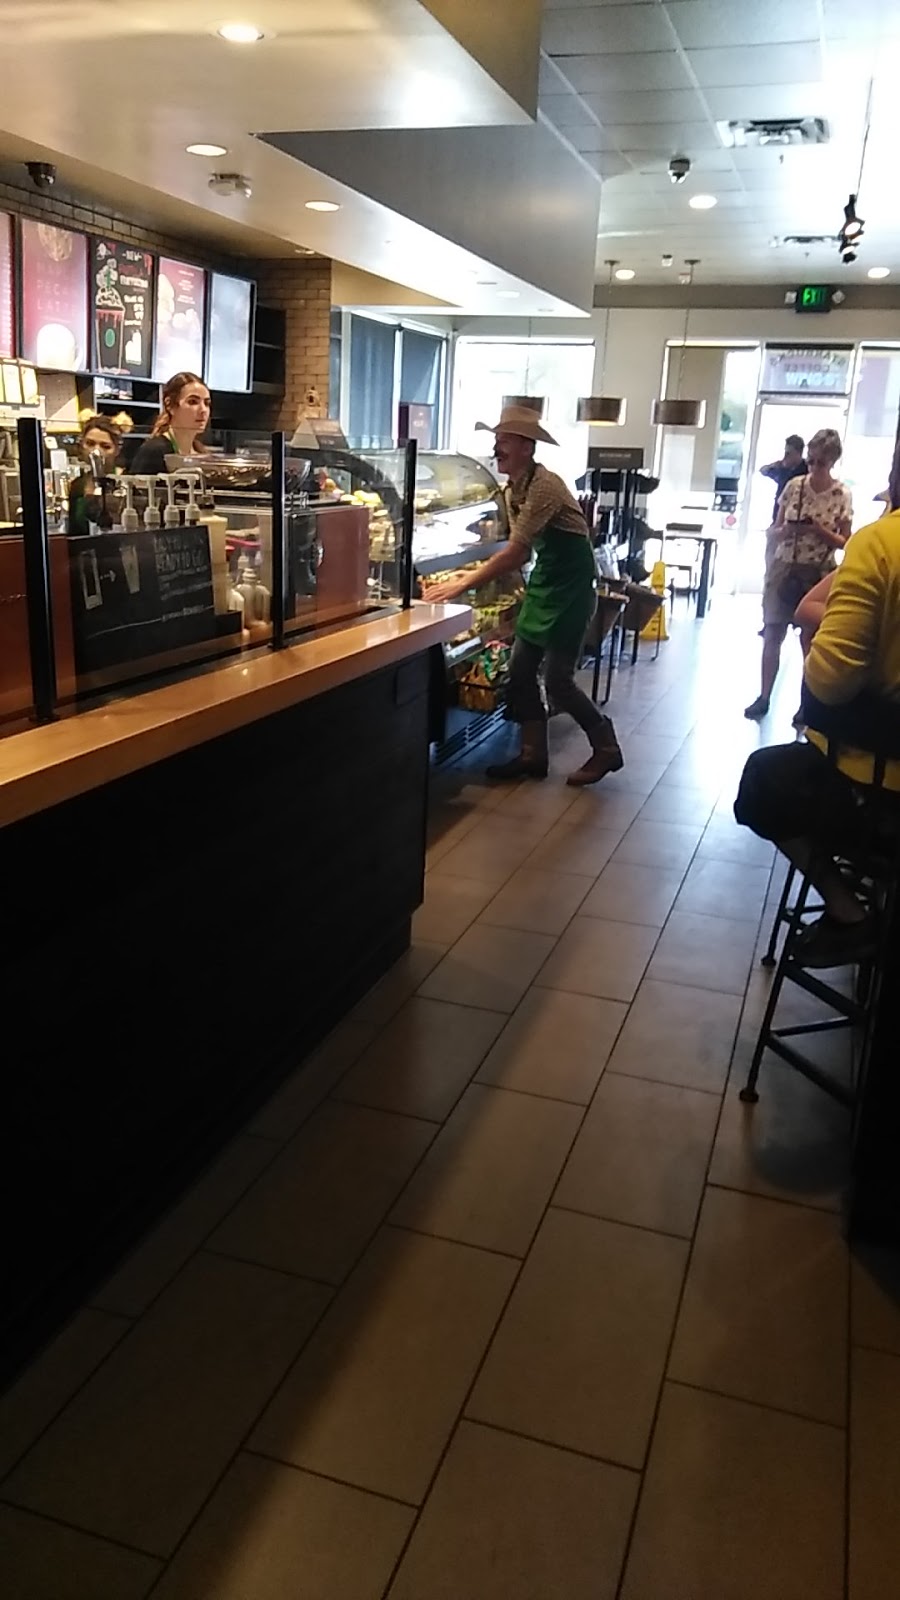 Starbucks | cafe | 661 Marks St, Henderson, NV 89014, USA | 7024503475 OR +1 702-450-3475